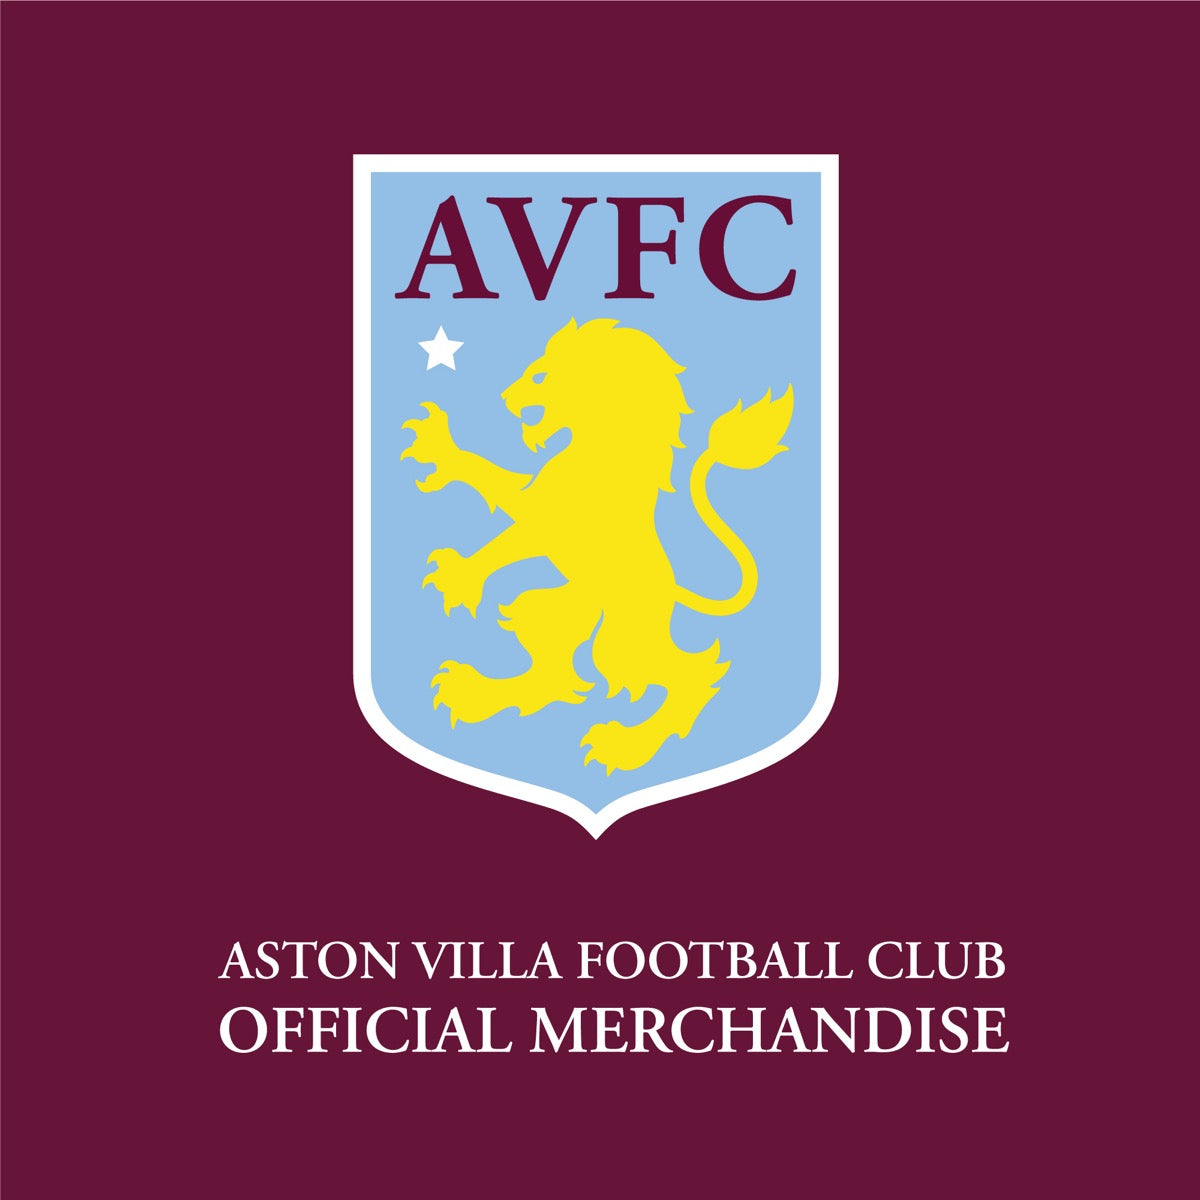 Aston Villa Football Club - Watkins 23-24 Wall Sticker + AVFC Decals